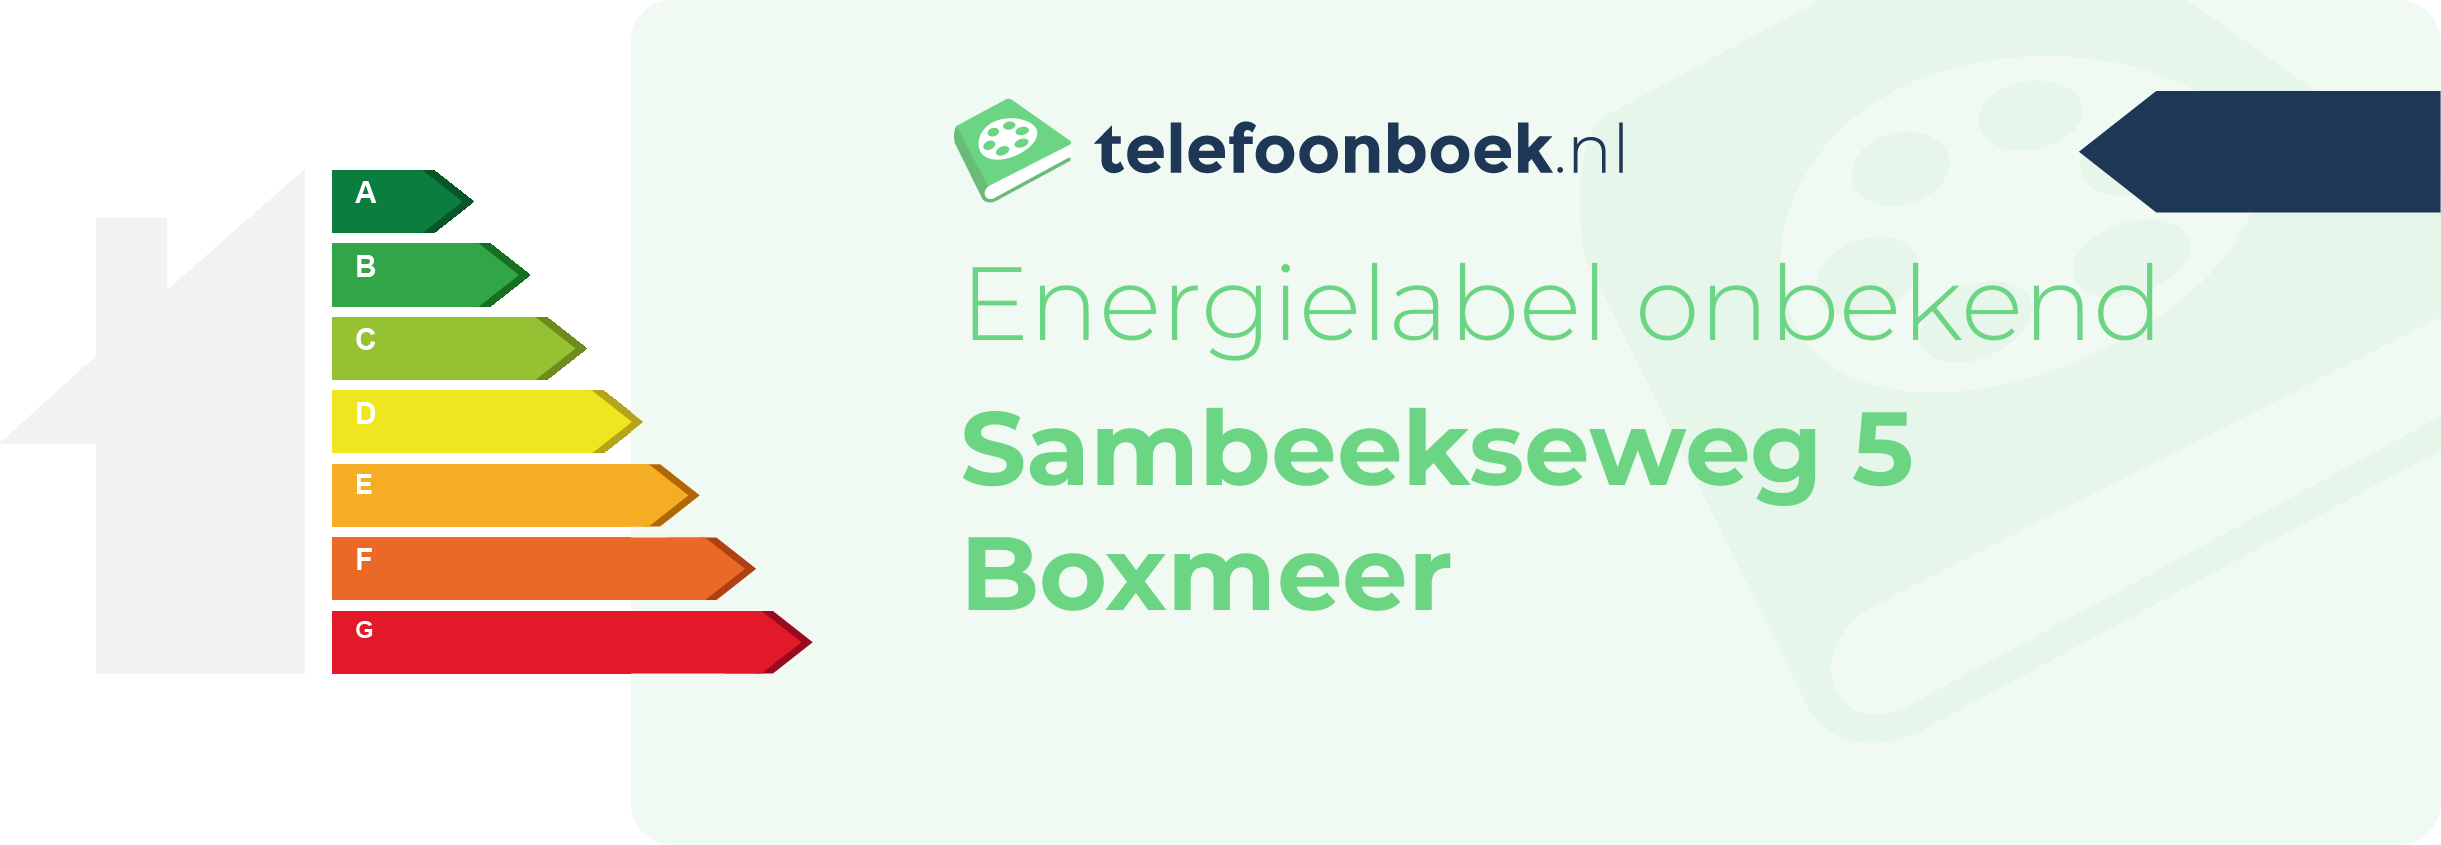 Energielabel Sambeekseweg 5 Boxmeer